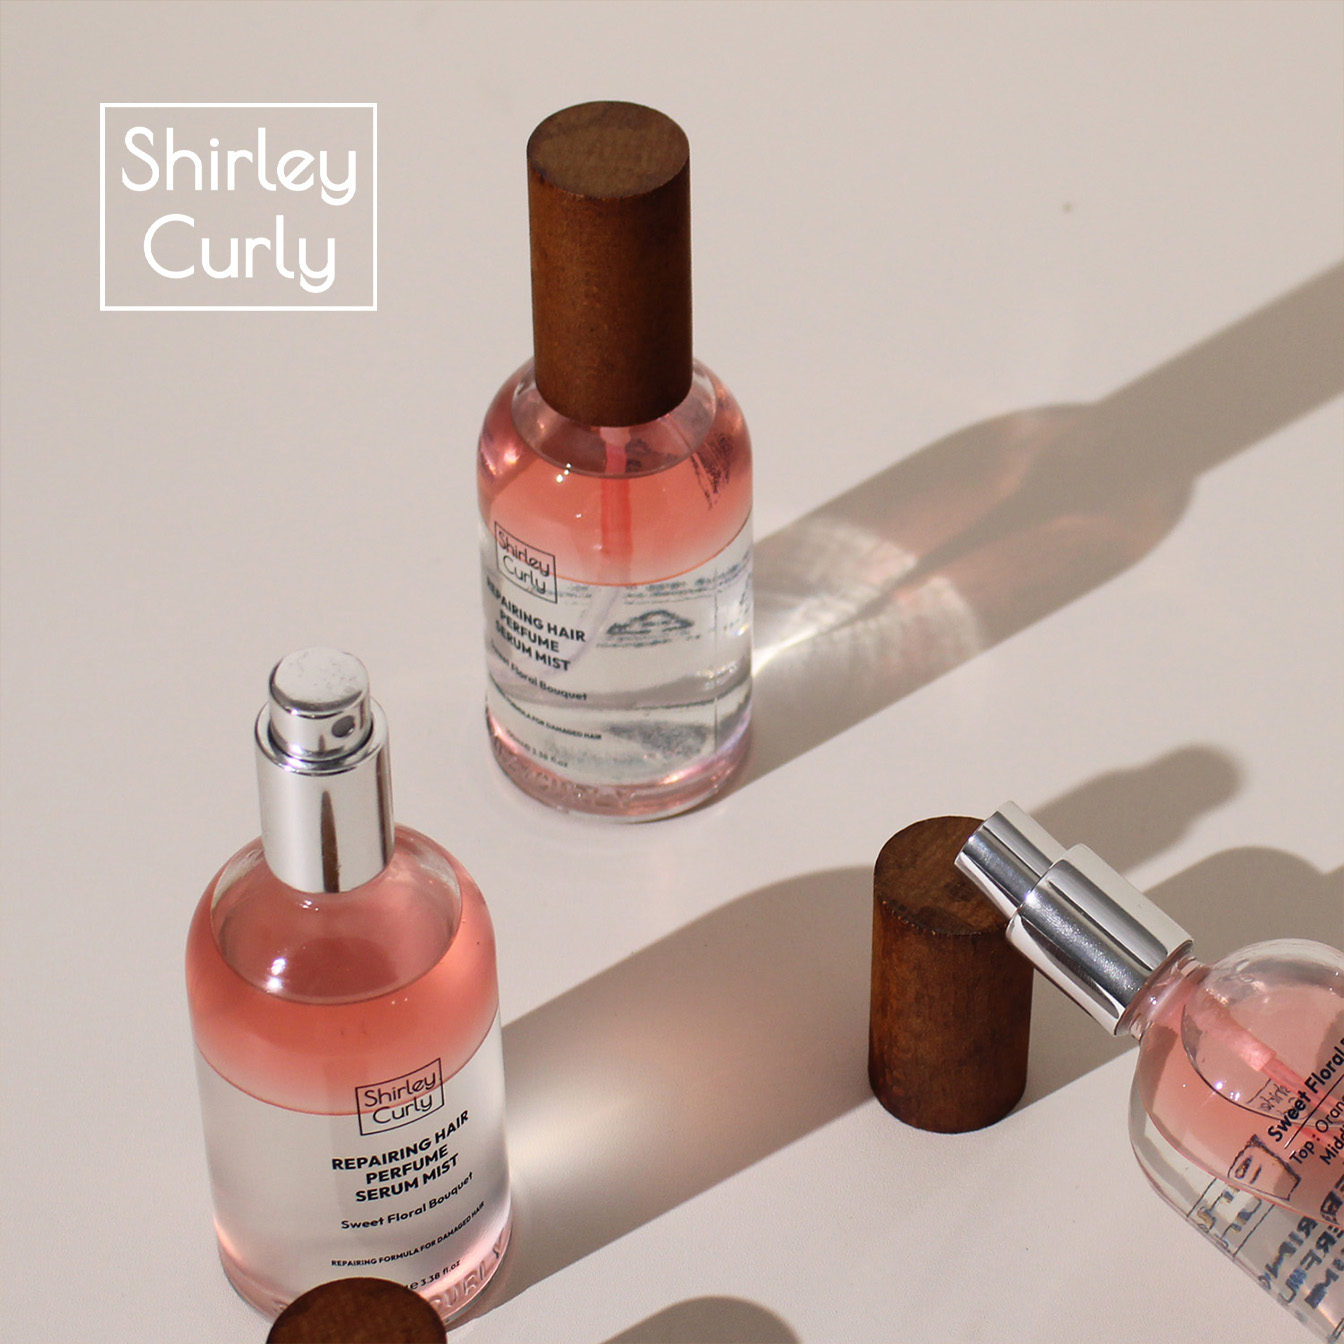 Xịt dưỡng tóc nước hoa Shirley Curly repairing hair Perfume Mist 100ml từ Hàn Quốc